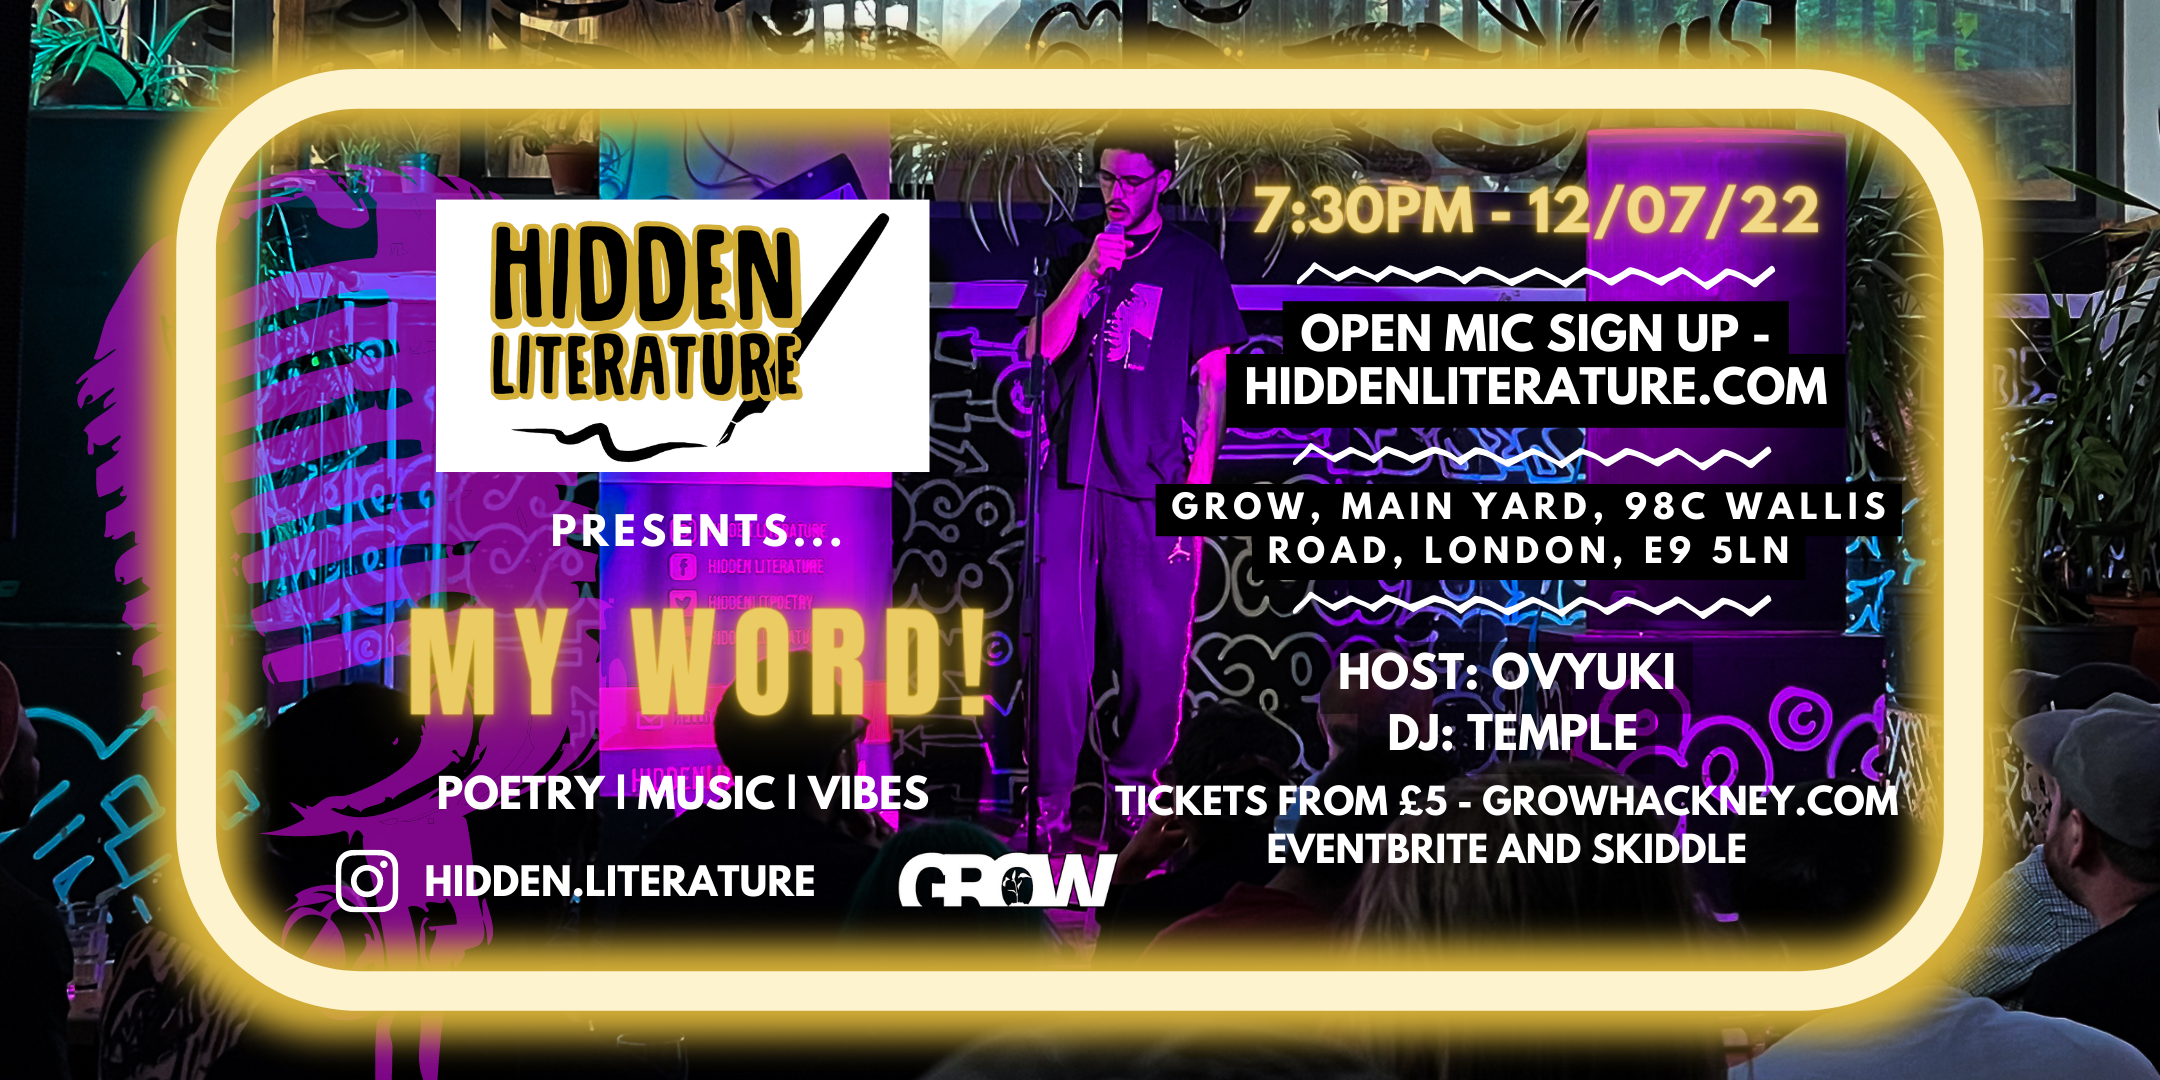 EVENTBRITE Hidden Literature - My Word! Flyer 12.07.22